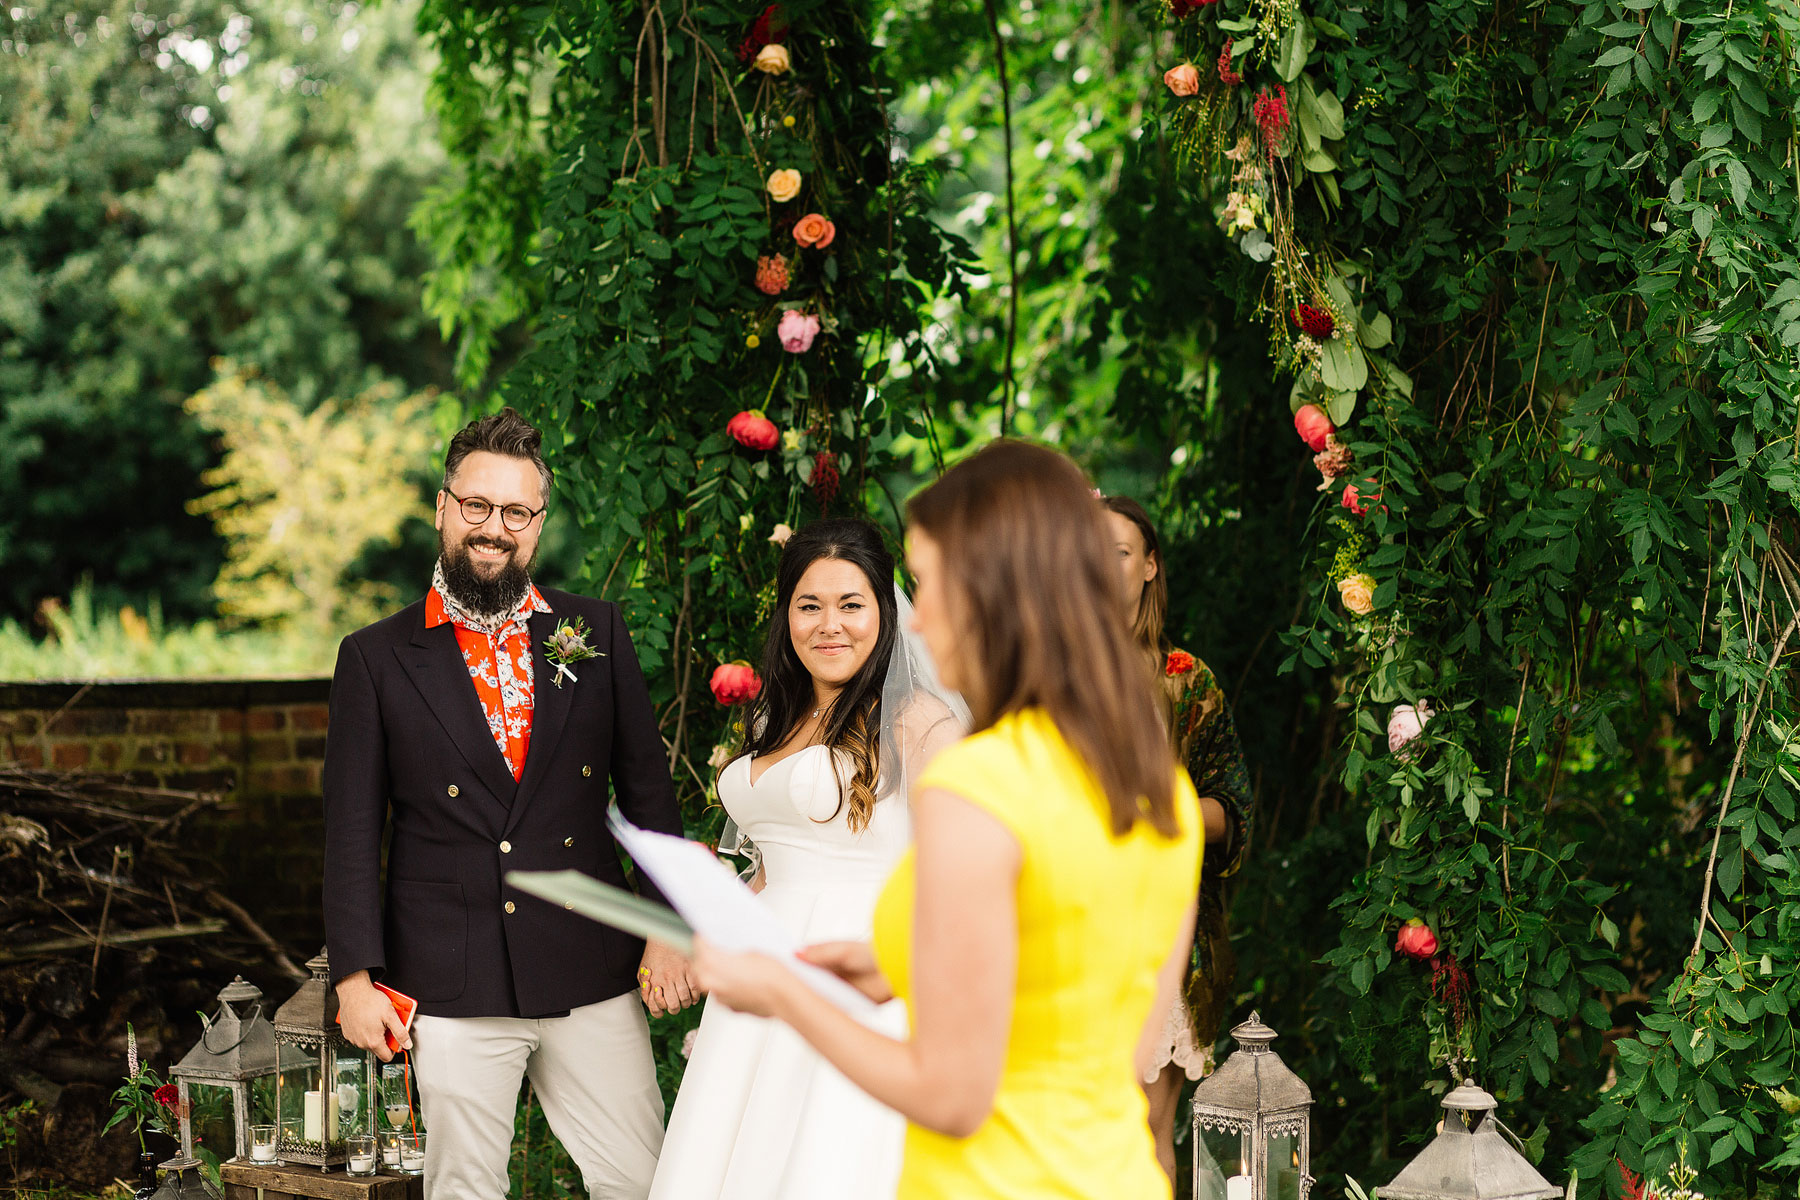 thwaite mills wedding in leeds with an outdoor ceremony